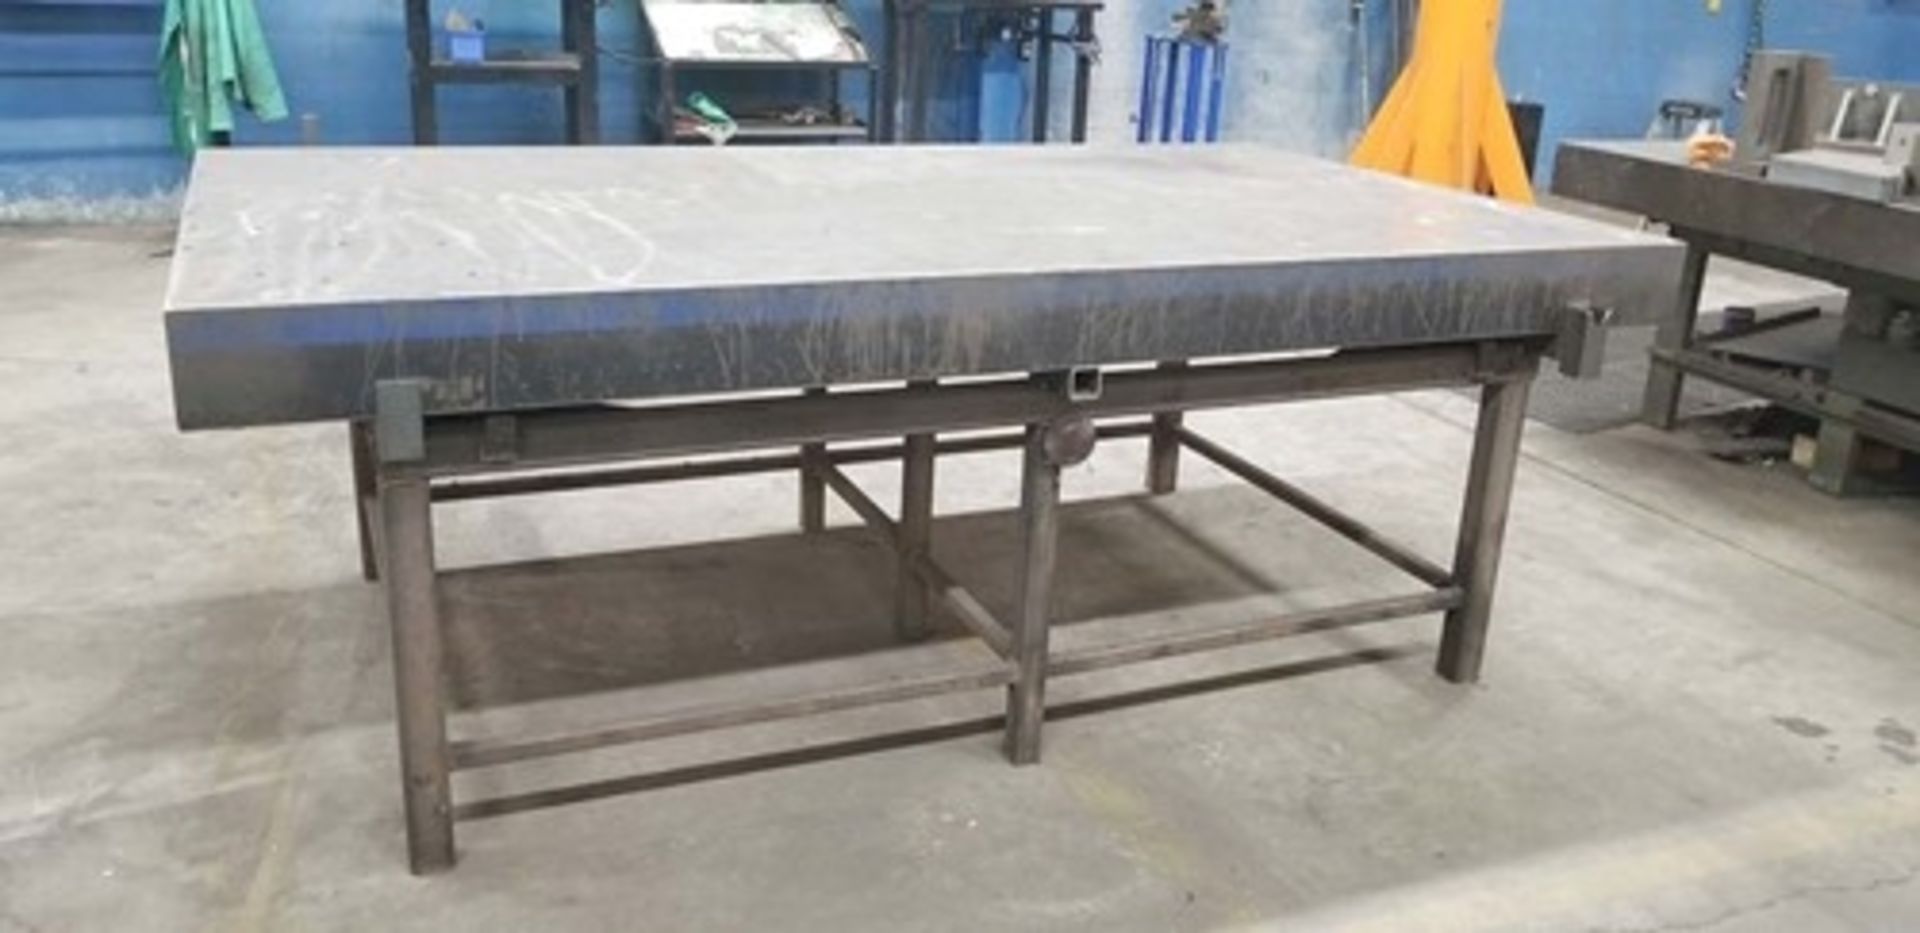 Heavy Duty Steel Welding Table - Image 2 of 2